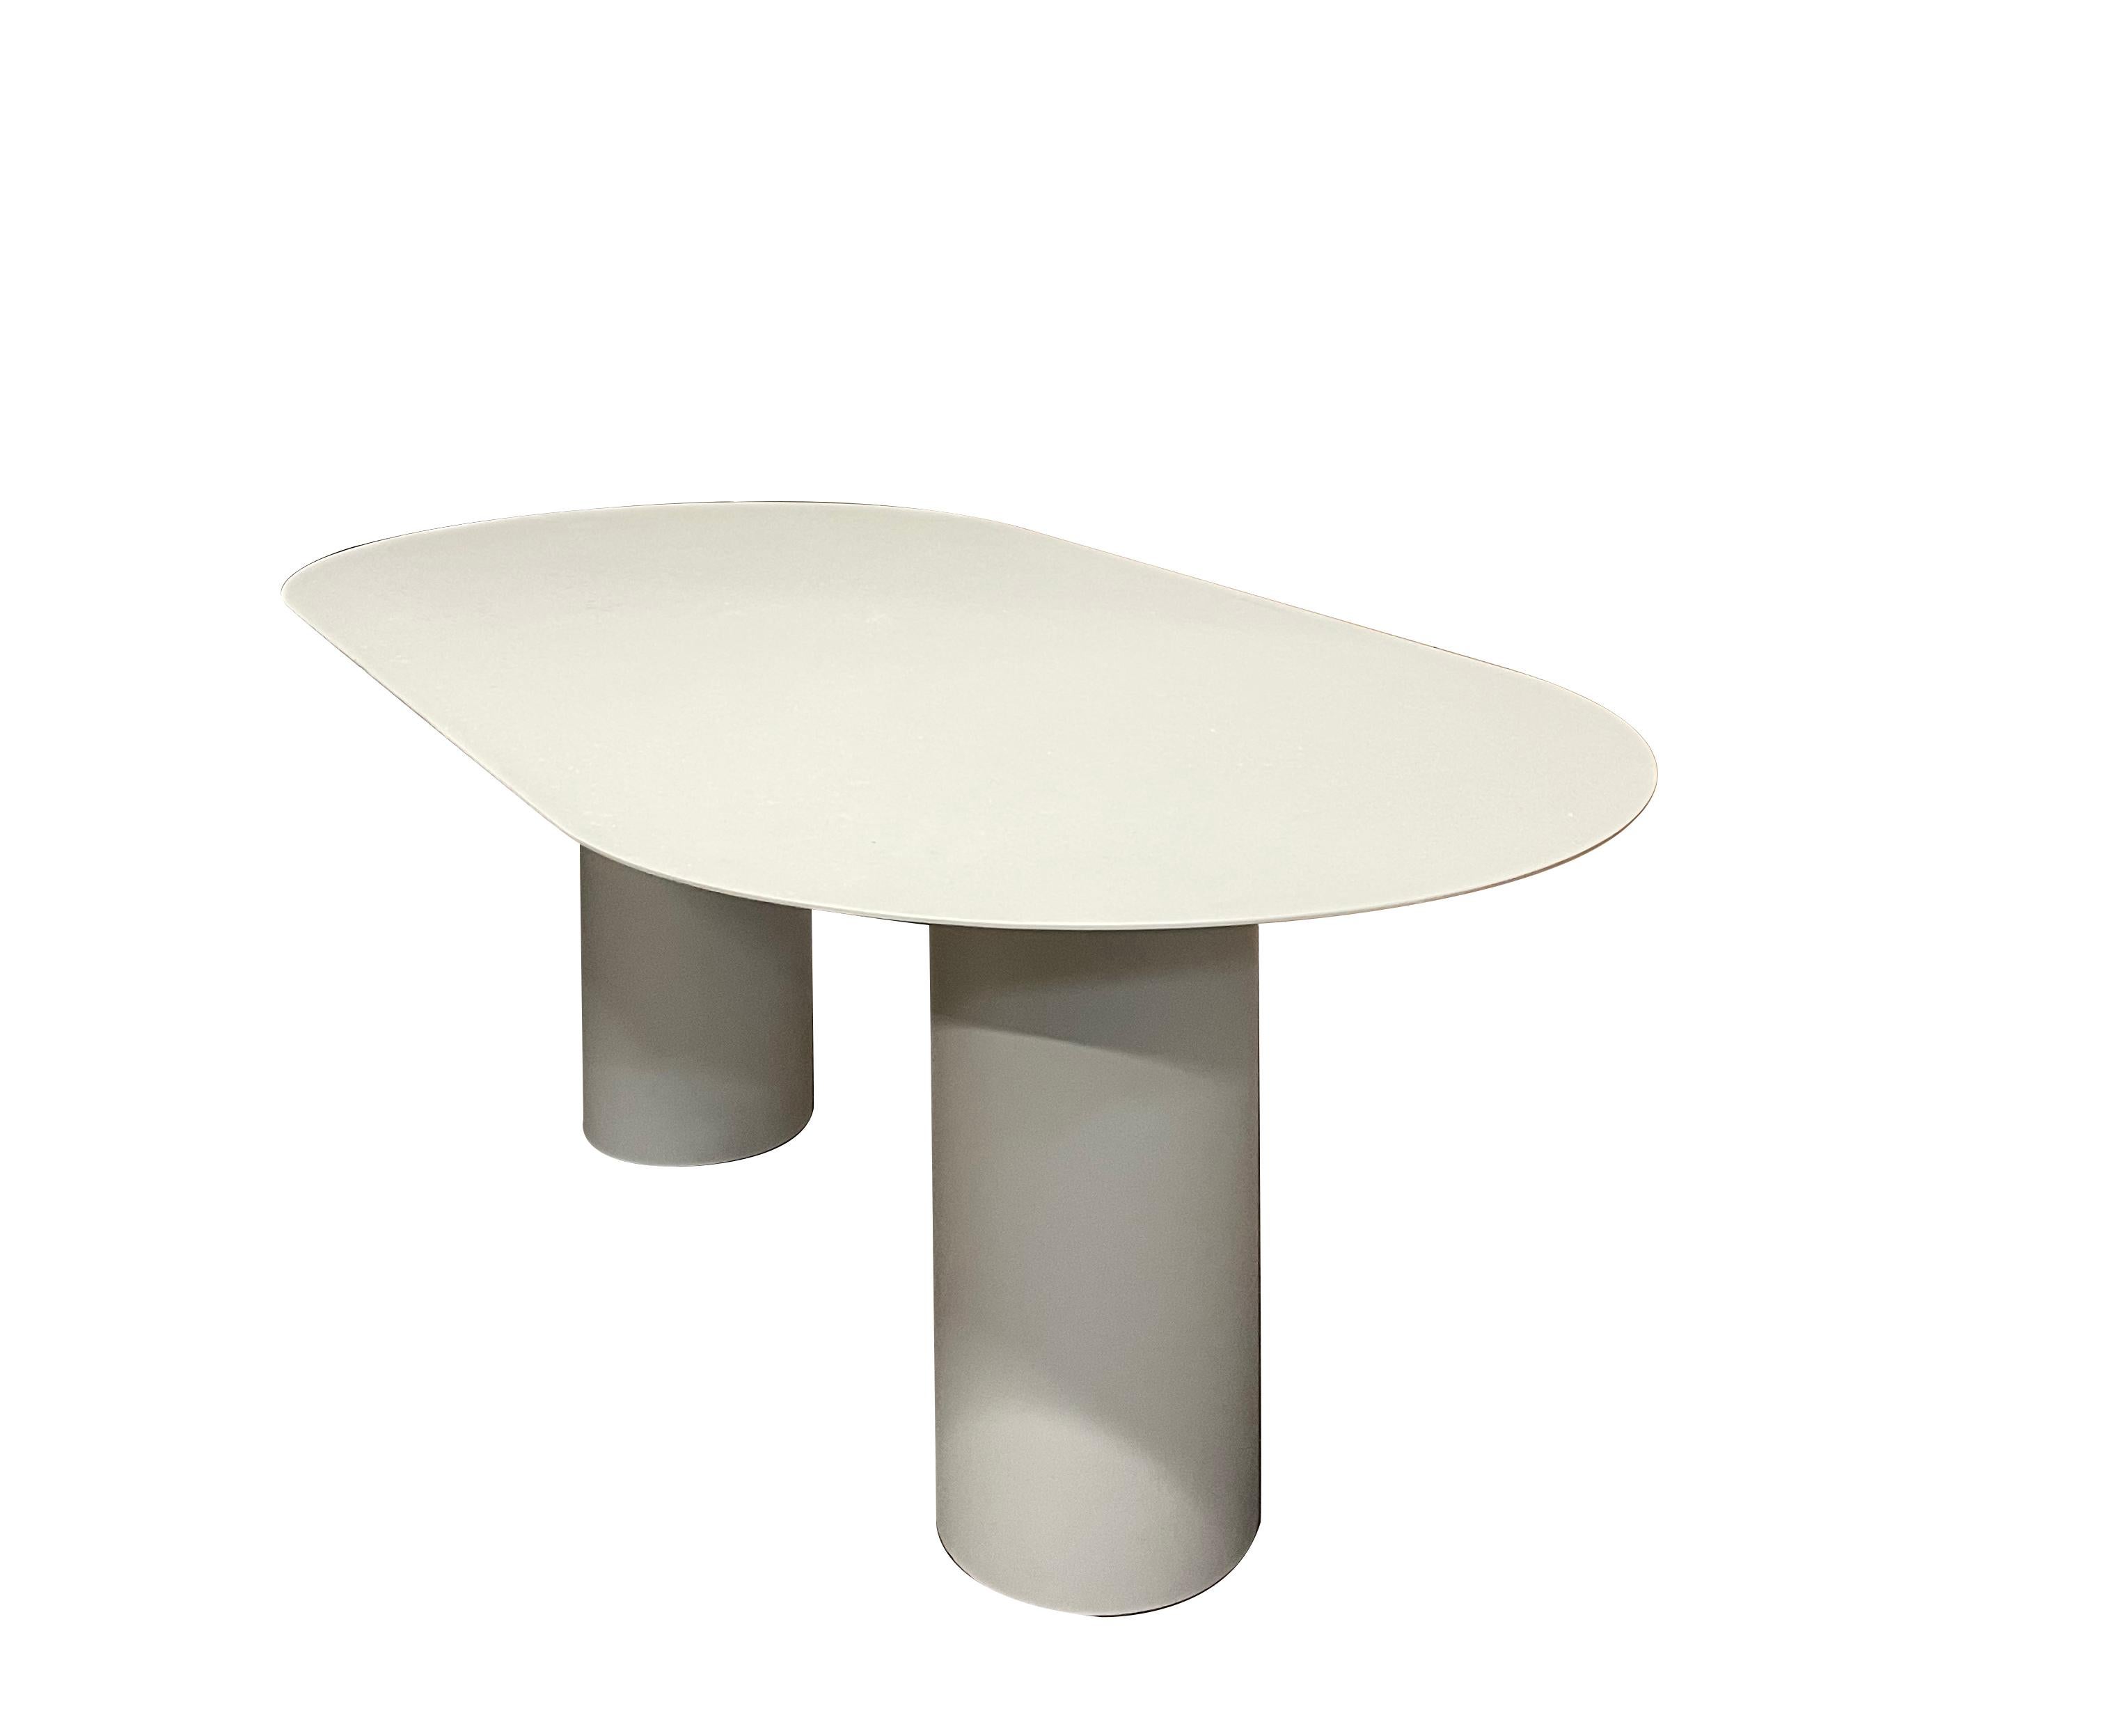 Table en aluminium signée par Chanel Kapitanj
Matériaux : Aluminium, pieds en acier inoxydable, RAL
Dimensions : L 300 x l 100 x H 75 cm

   

Née à Liège en 1992, Chanel Kapitanj a étudié le design industriel en Belgique. Sa fascination pour